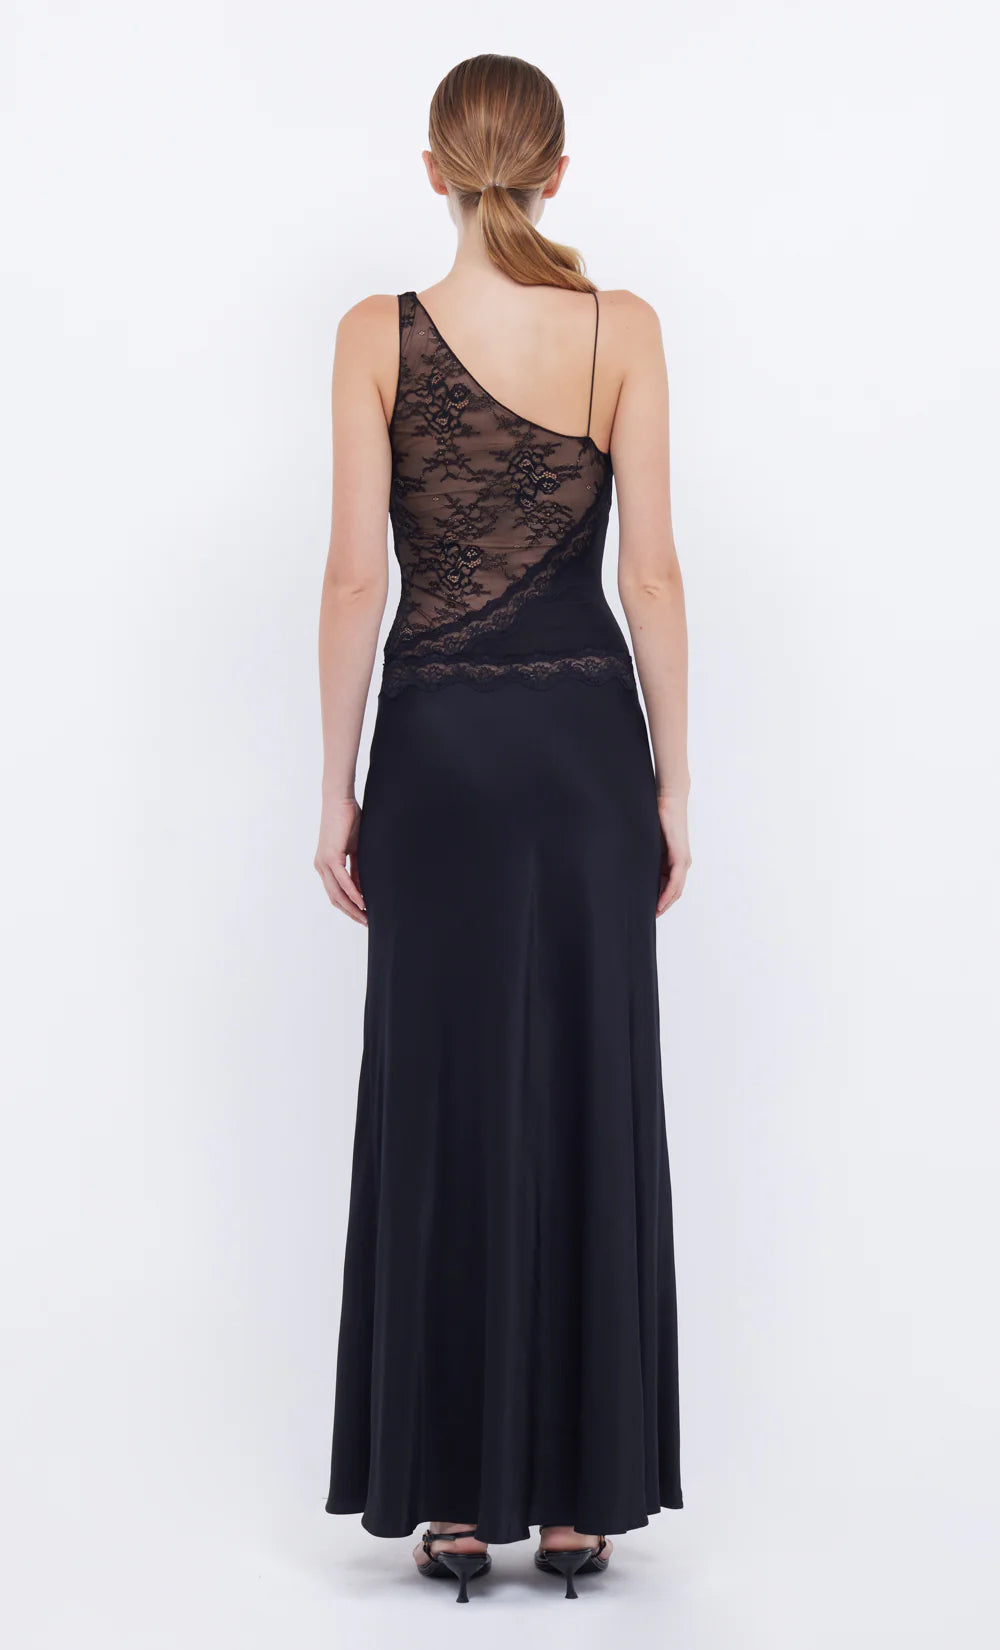 Abrielle Lace Maxi Dress Black